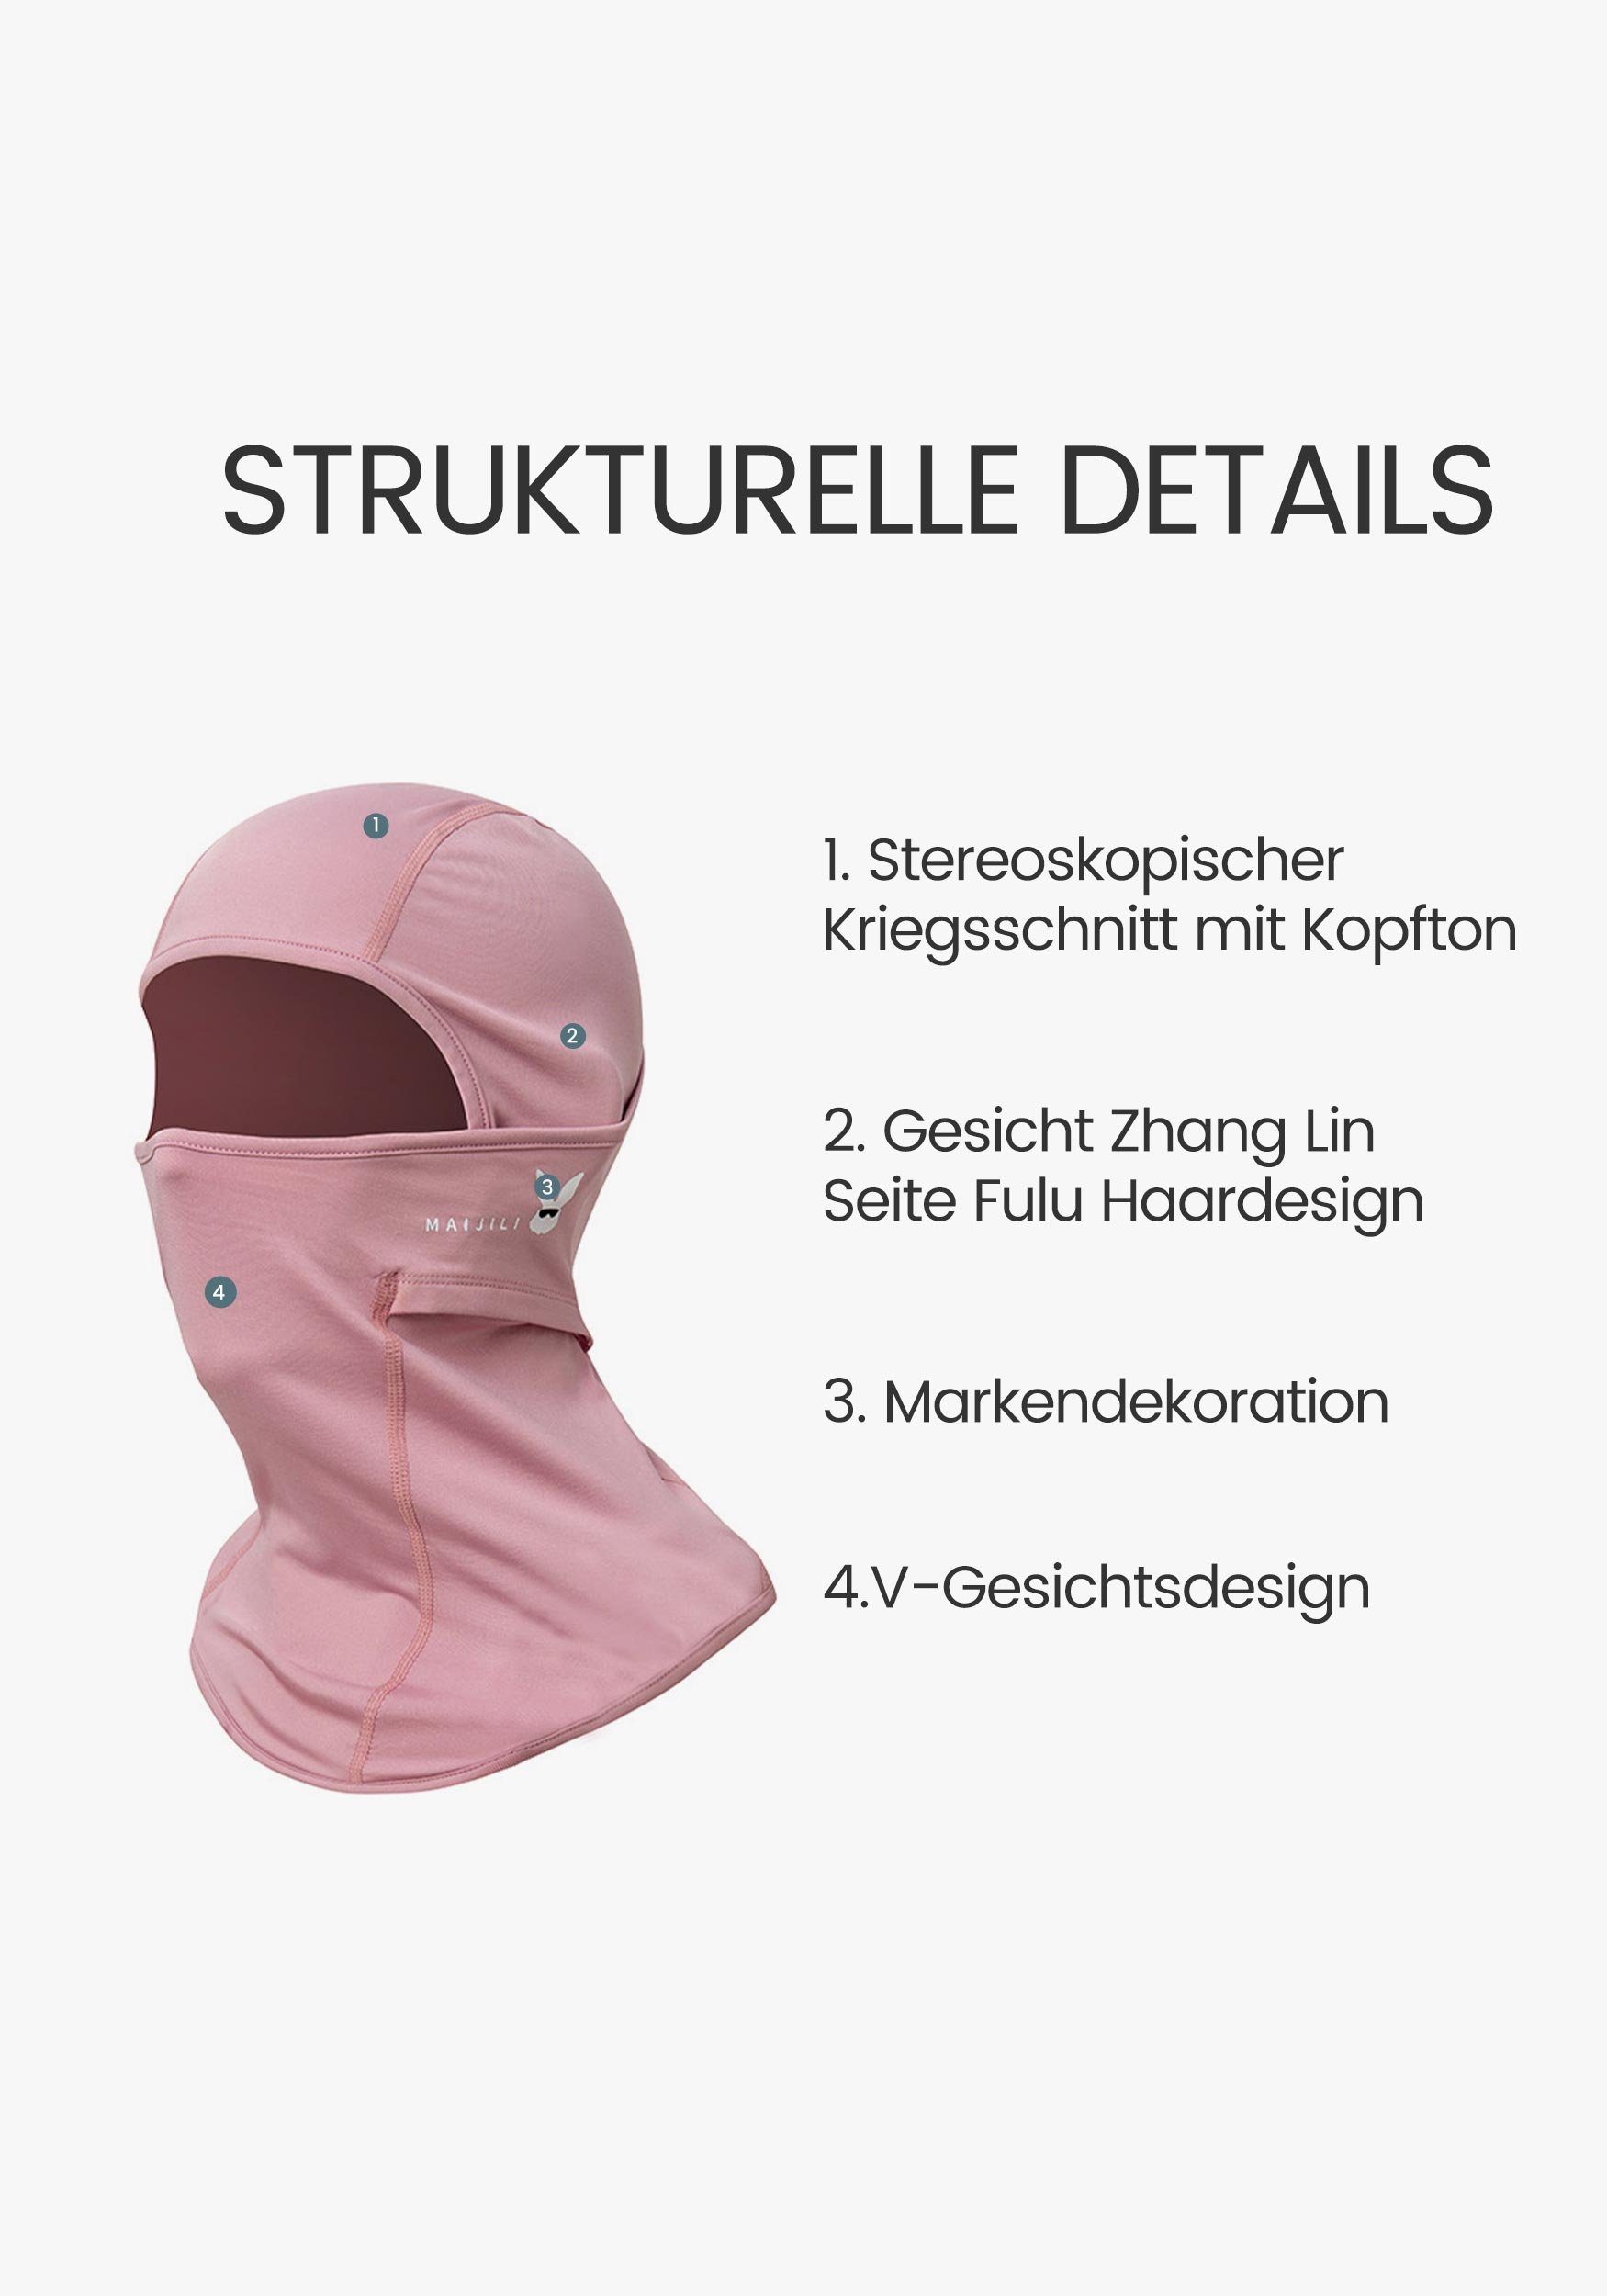 Sturmhaube Skimaske Umfassenden Widersteht für UV-Strahlen Rosa Schutz MAGICSHE